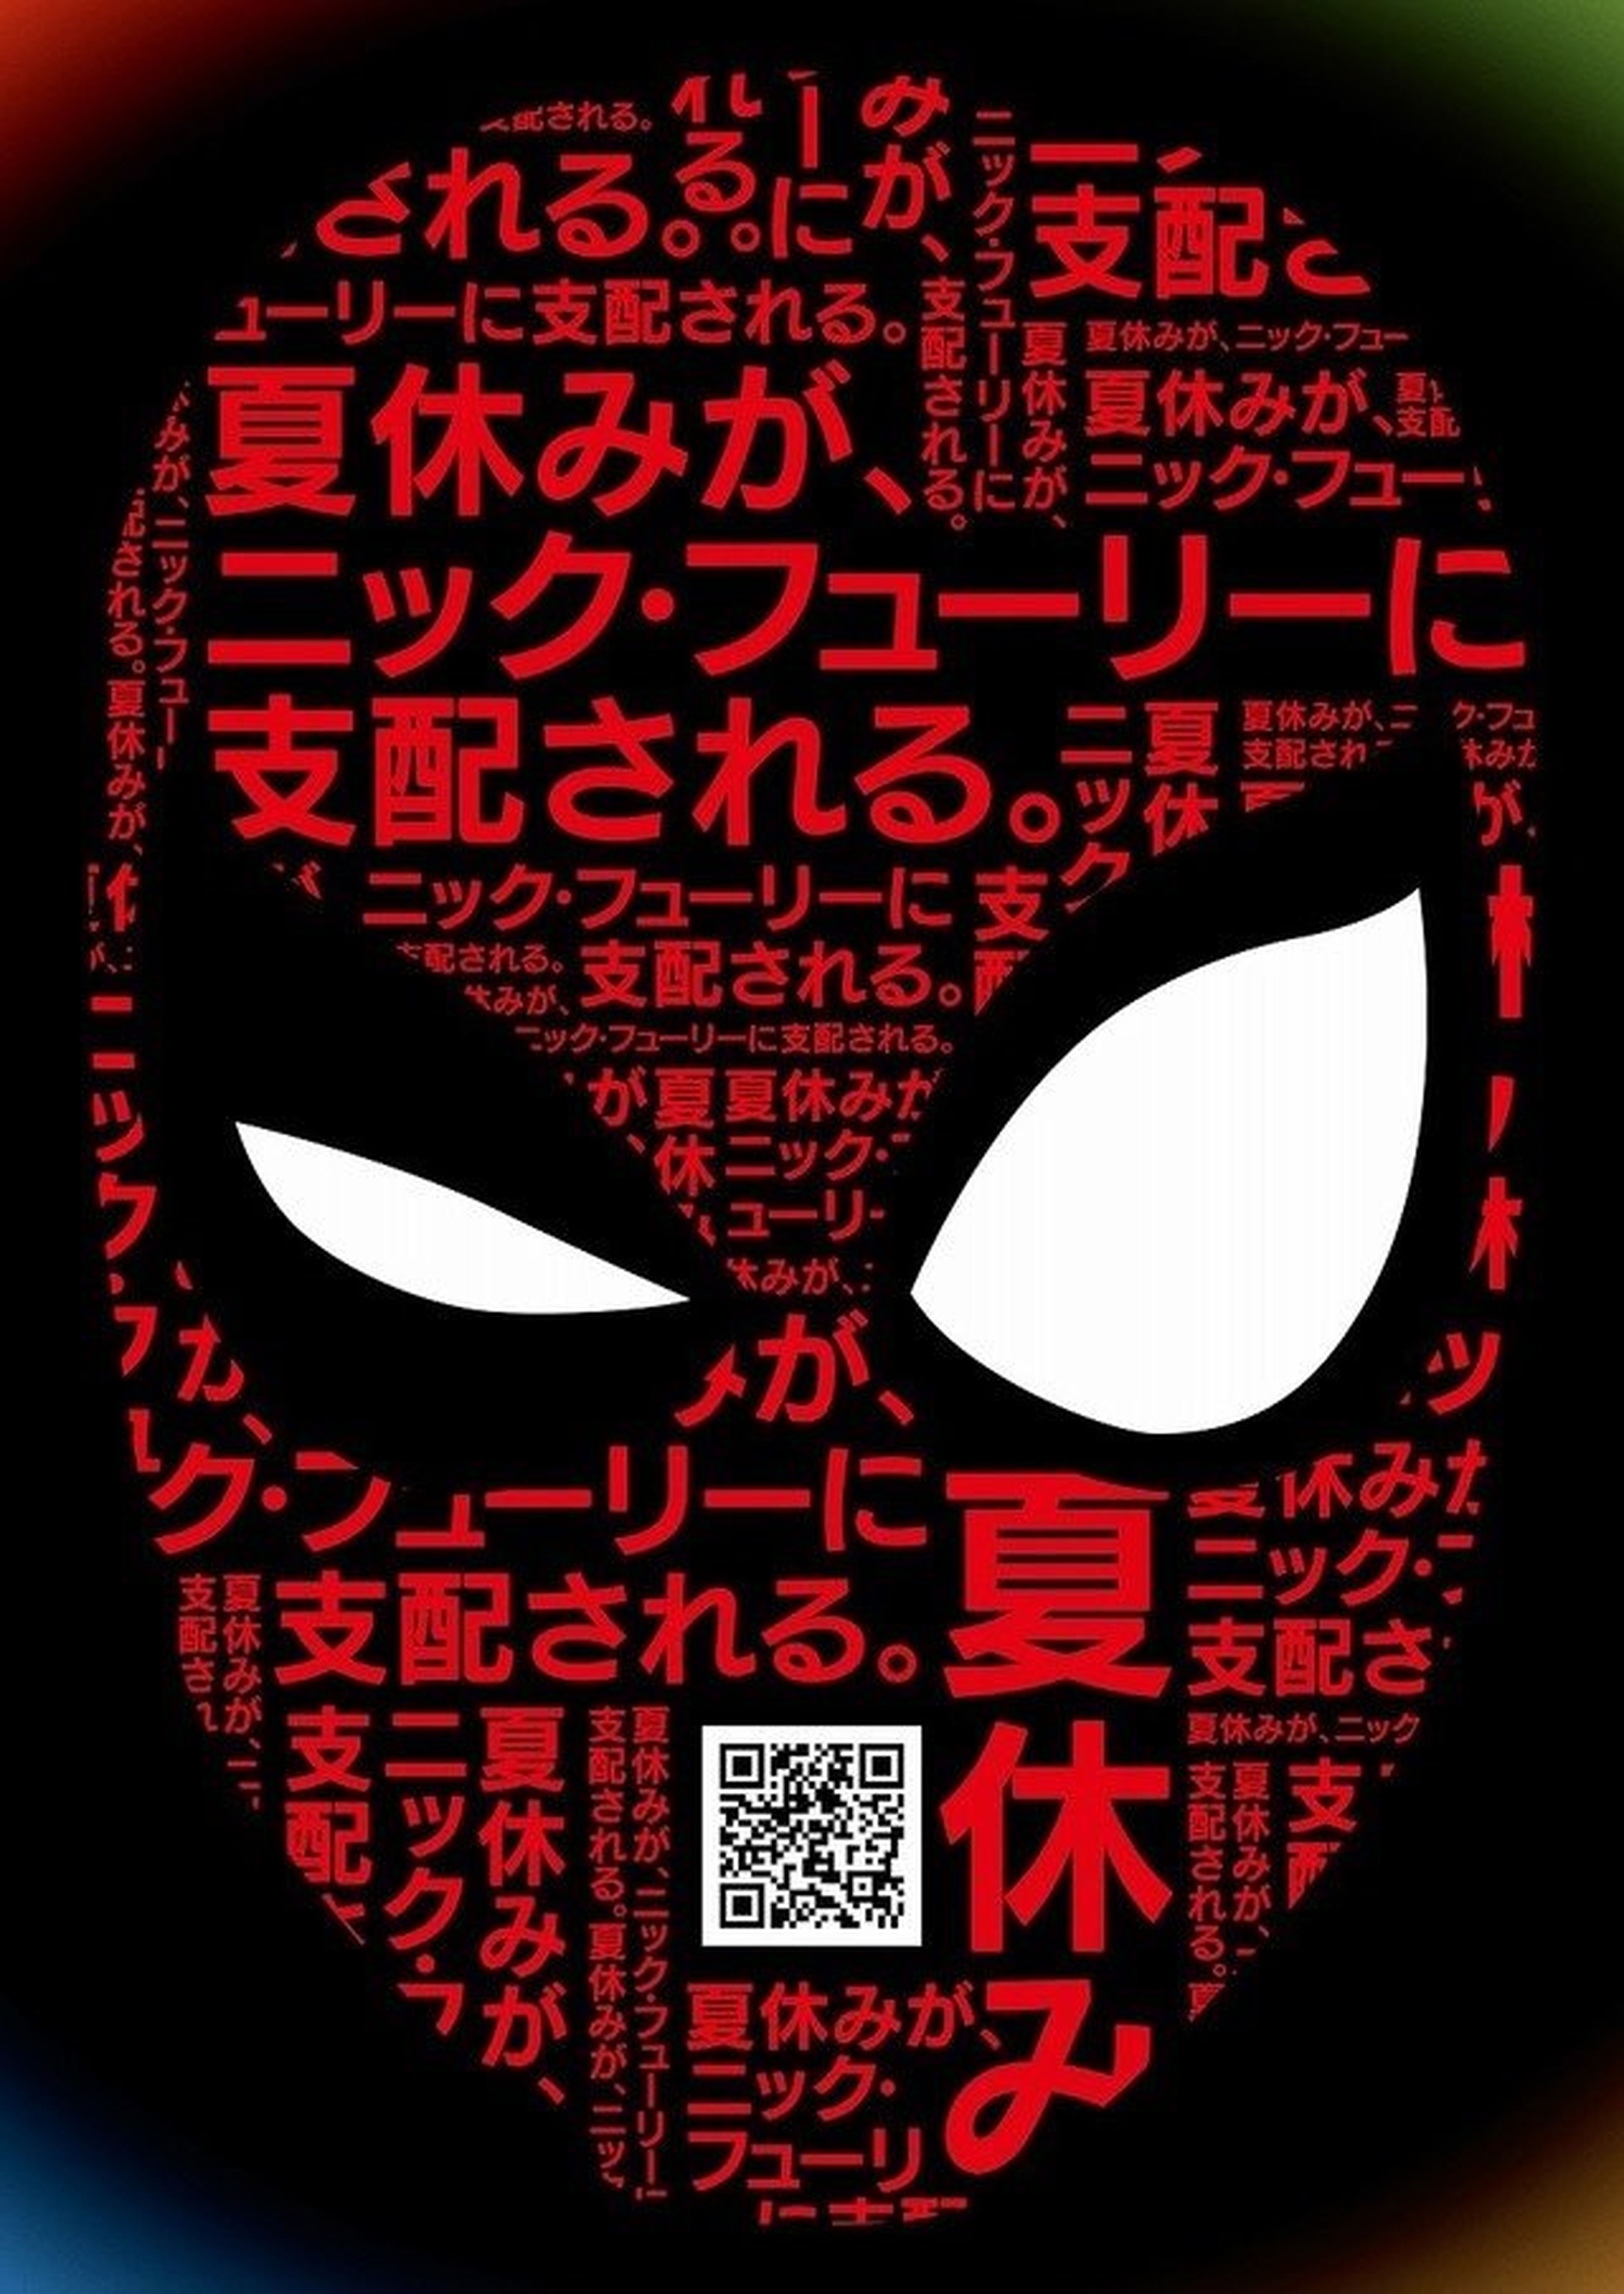 Spider-Man Lejos de casa - Póster japonés